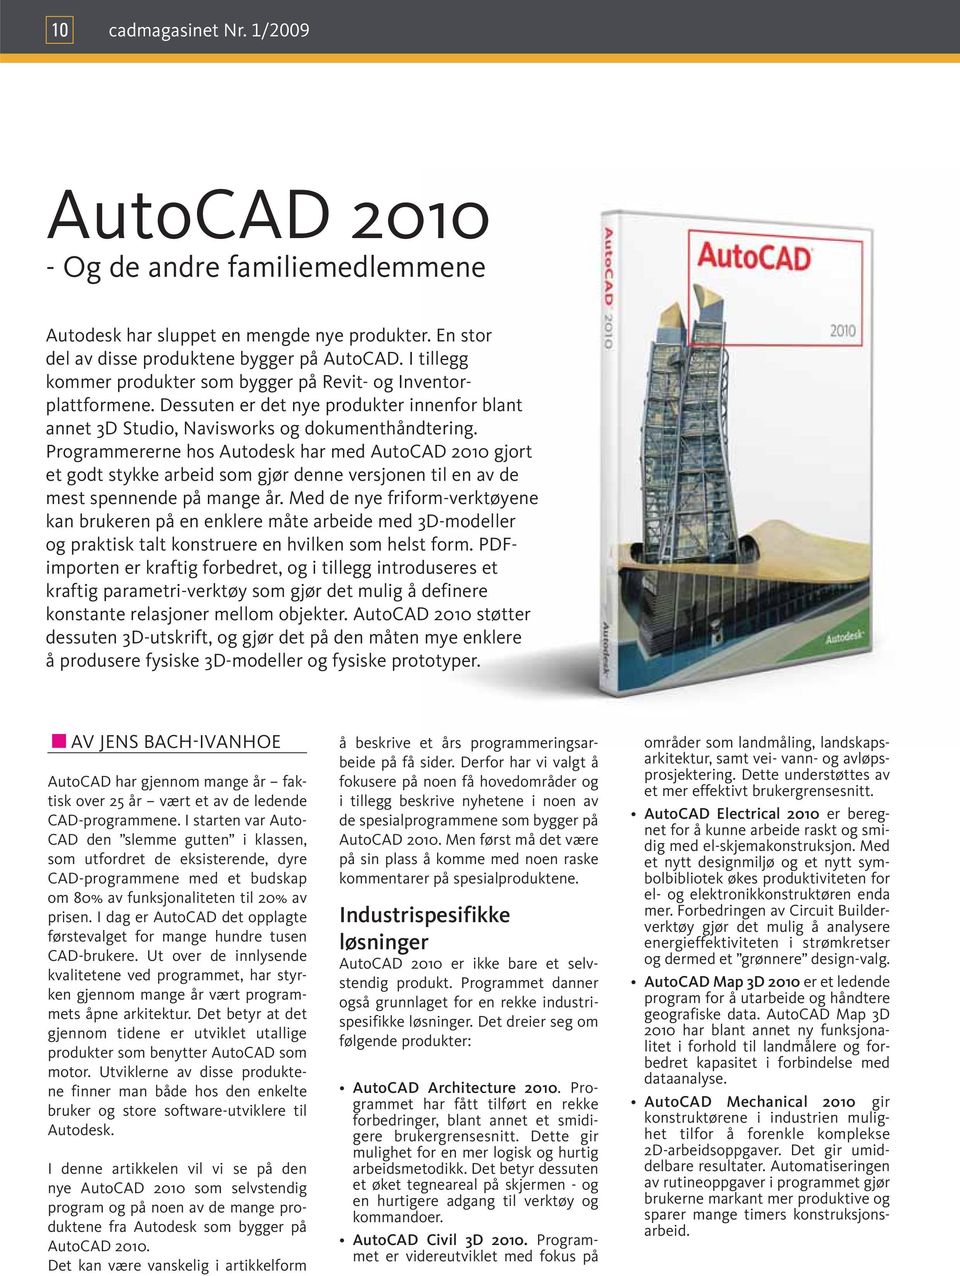 Programmererne hos Autodesk har med AutoCAD 2010 gjort et godt stykke arbeid som gjør denne versjonen til en av de mest spennende på mange år.